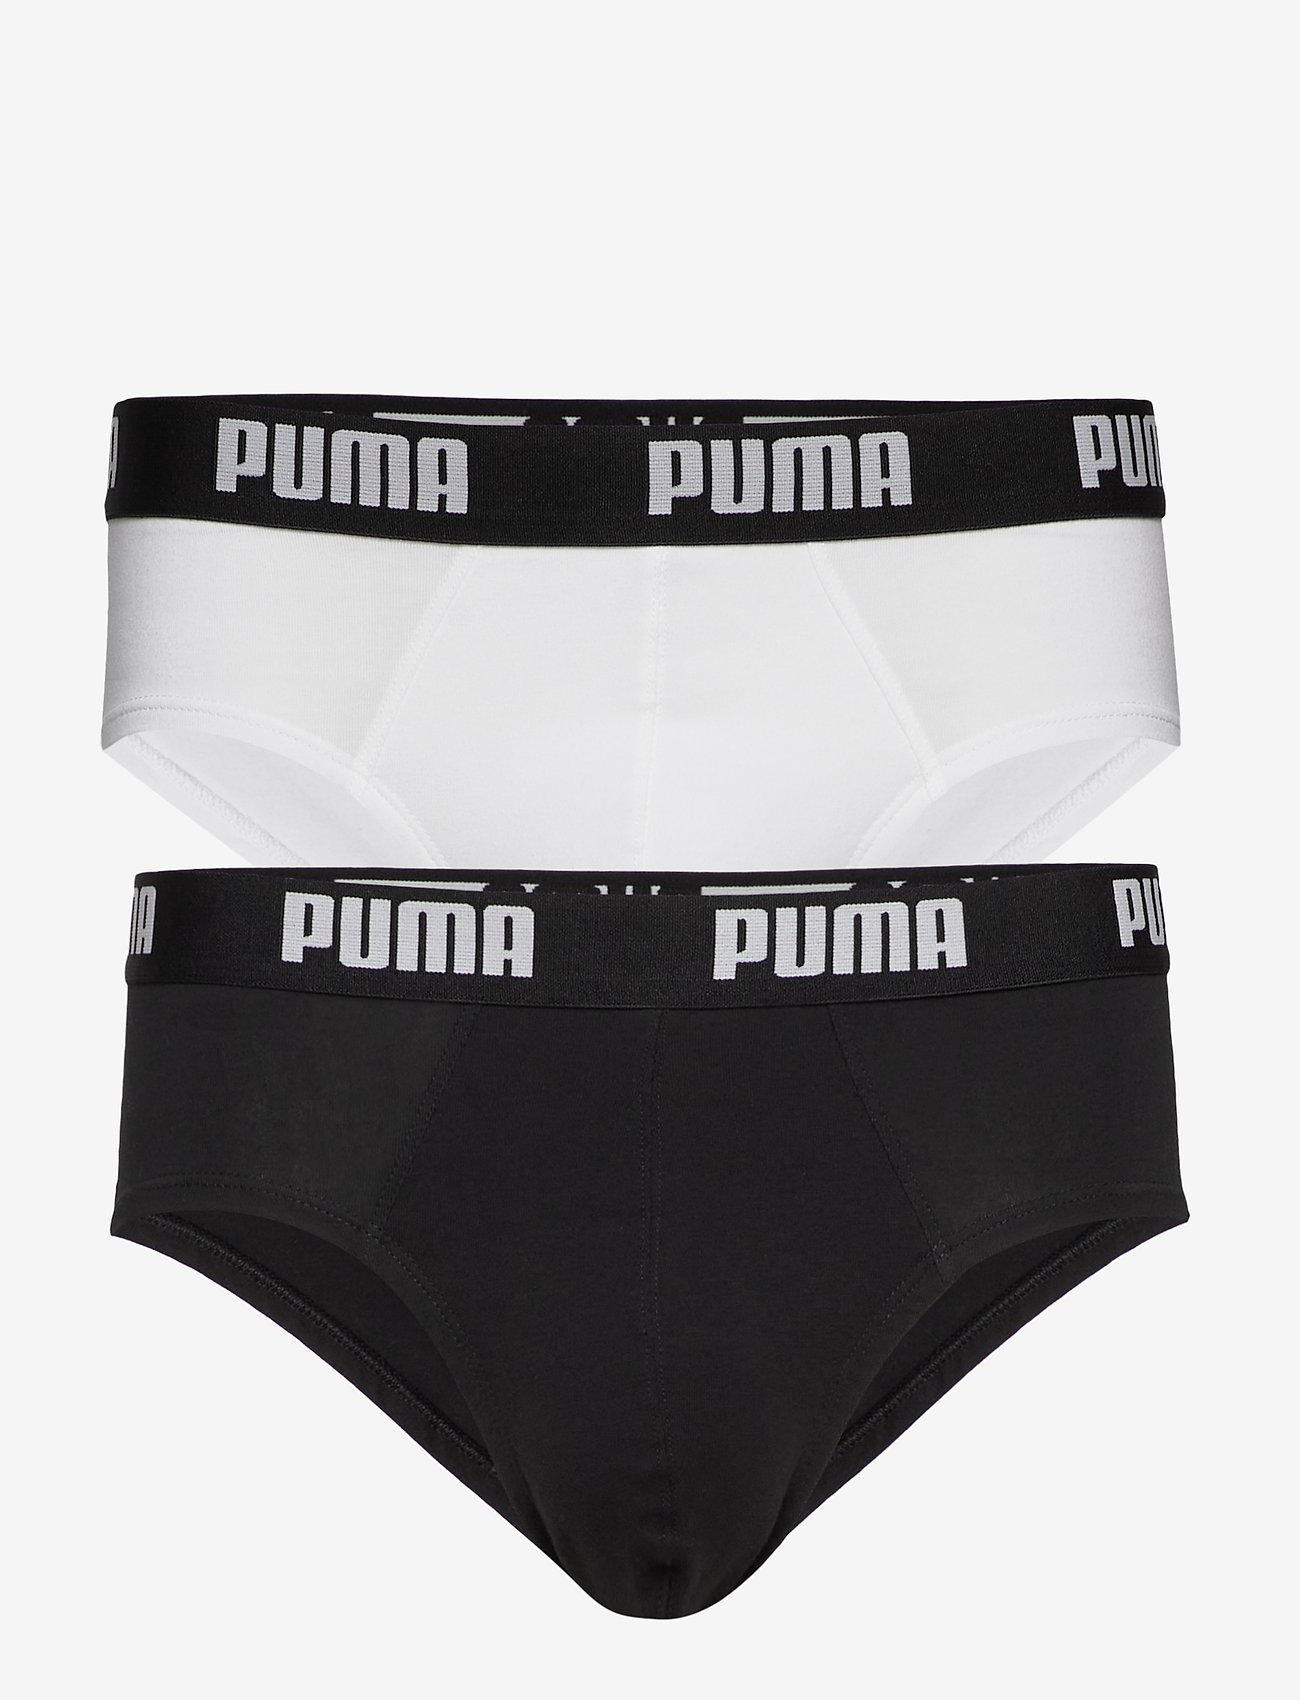 PUMA Puma Basic Brief 2p - Briefs | Boozt.com